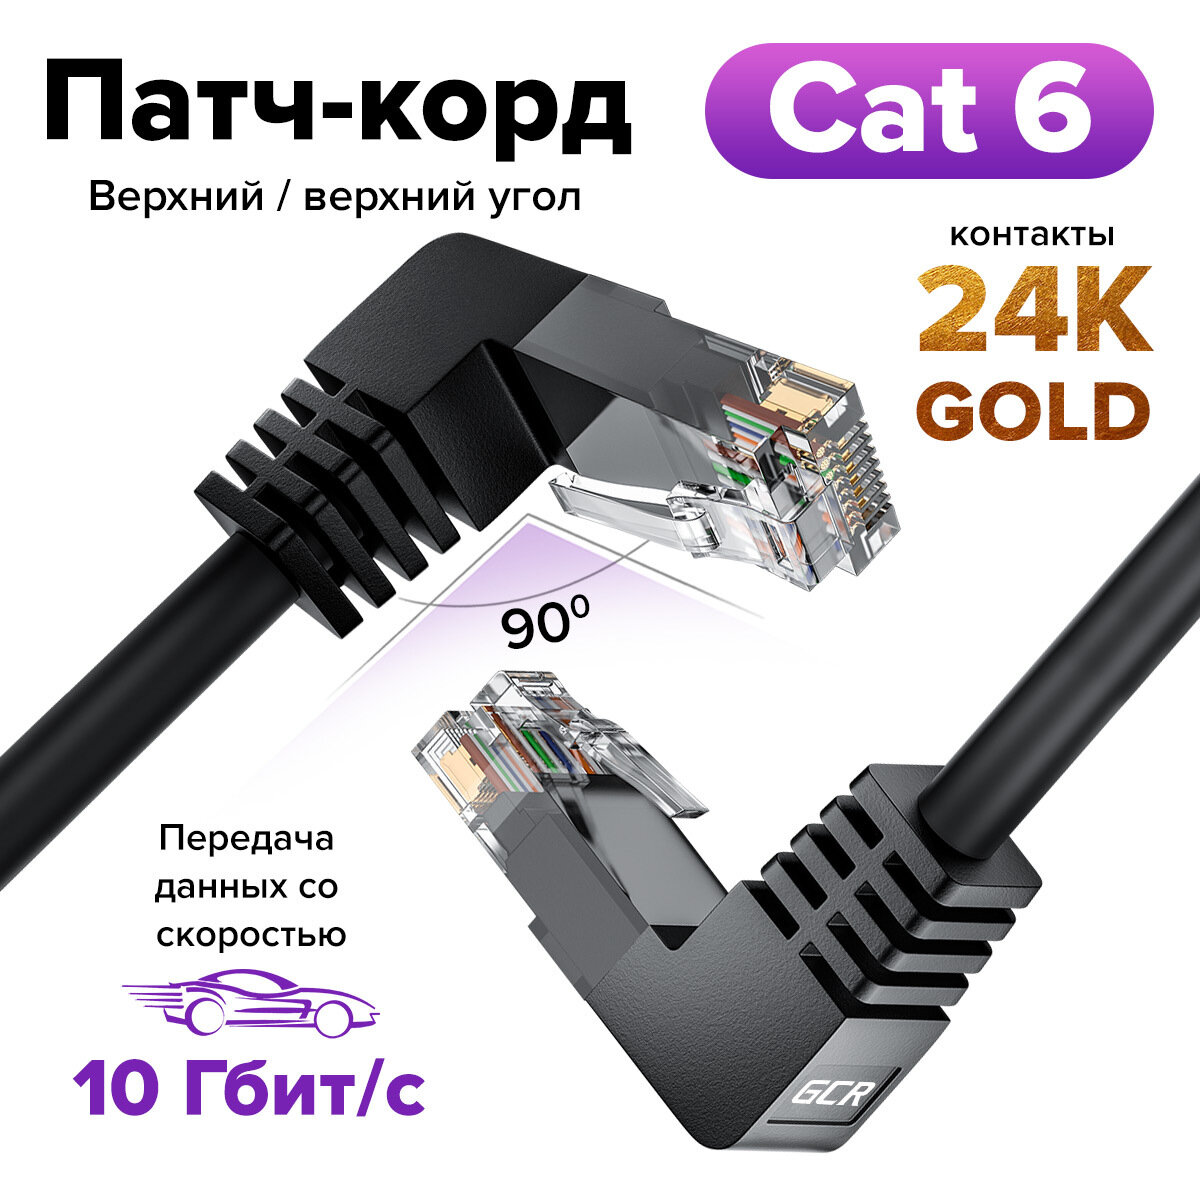 Патч корд угловой 2 метра KAT.6 LAN интернет кабель GCR верхний угол / верхний угол черный провод для интернета 10 Гбит/с